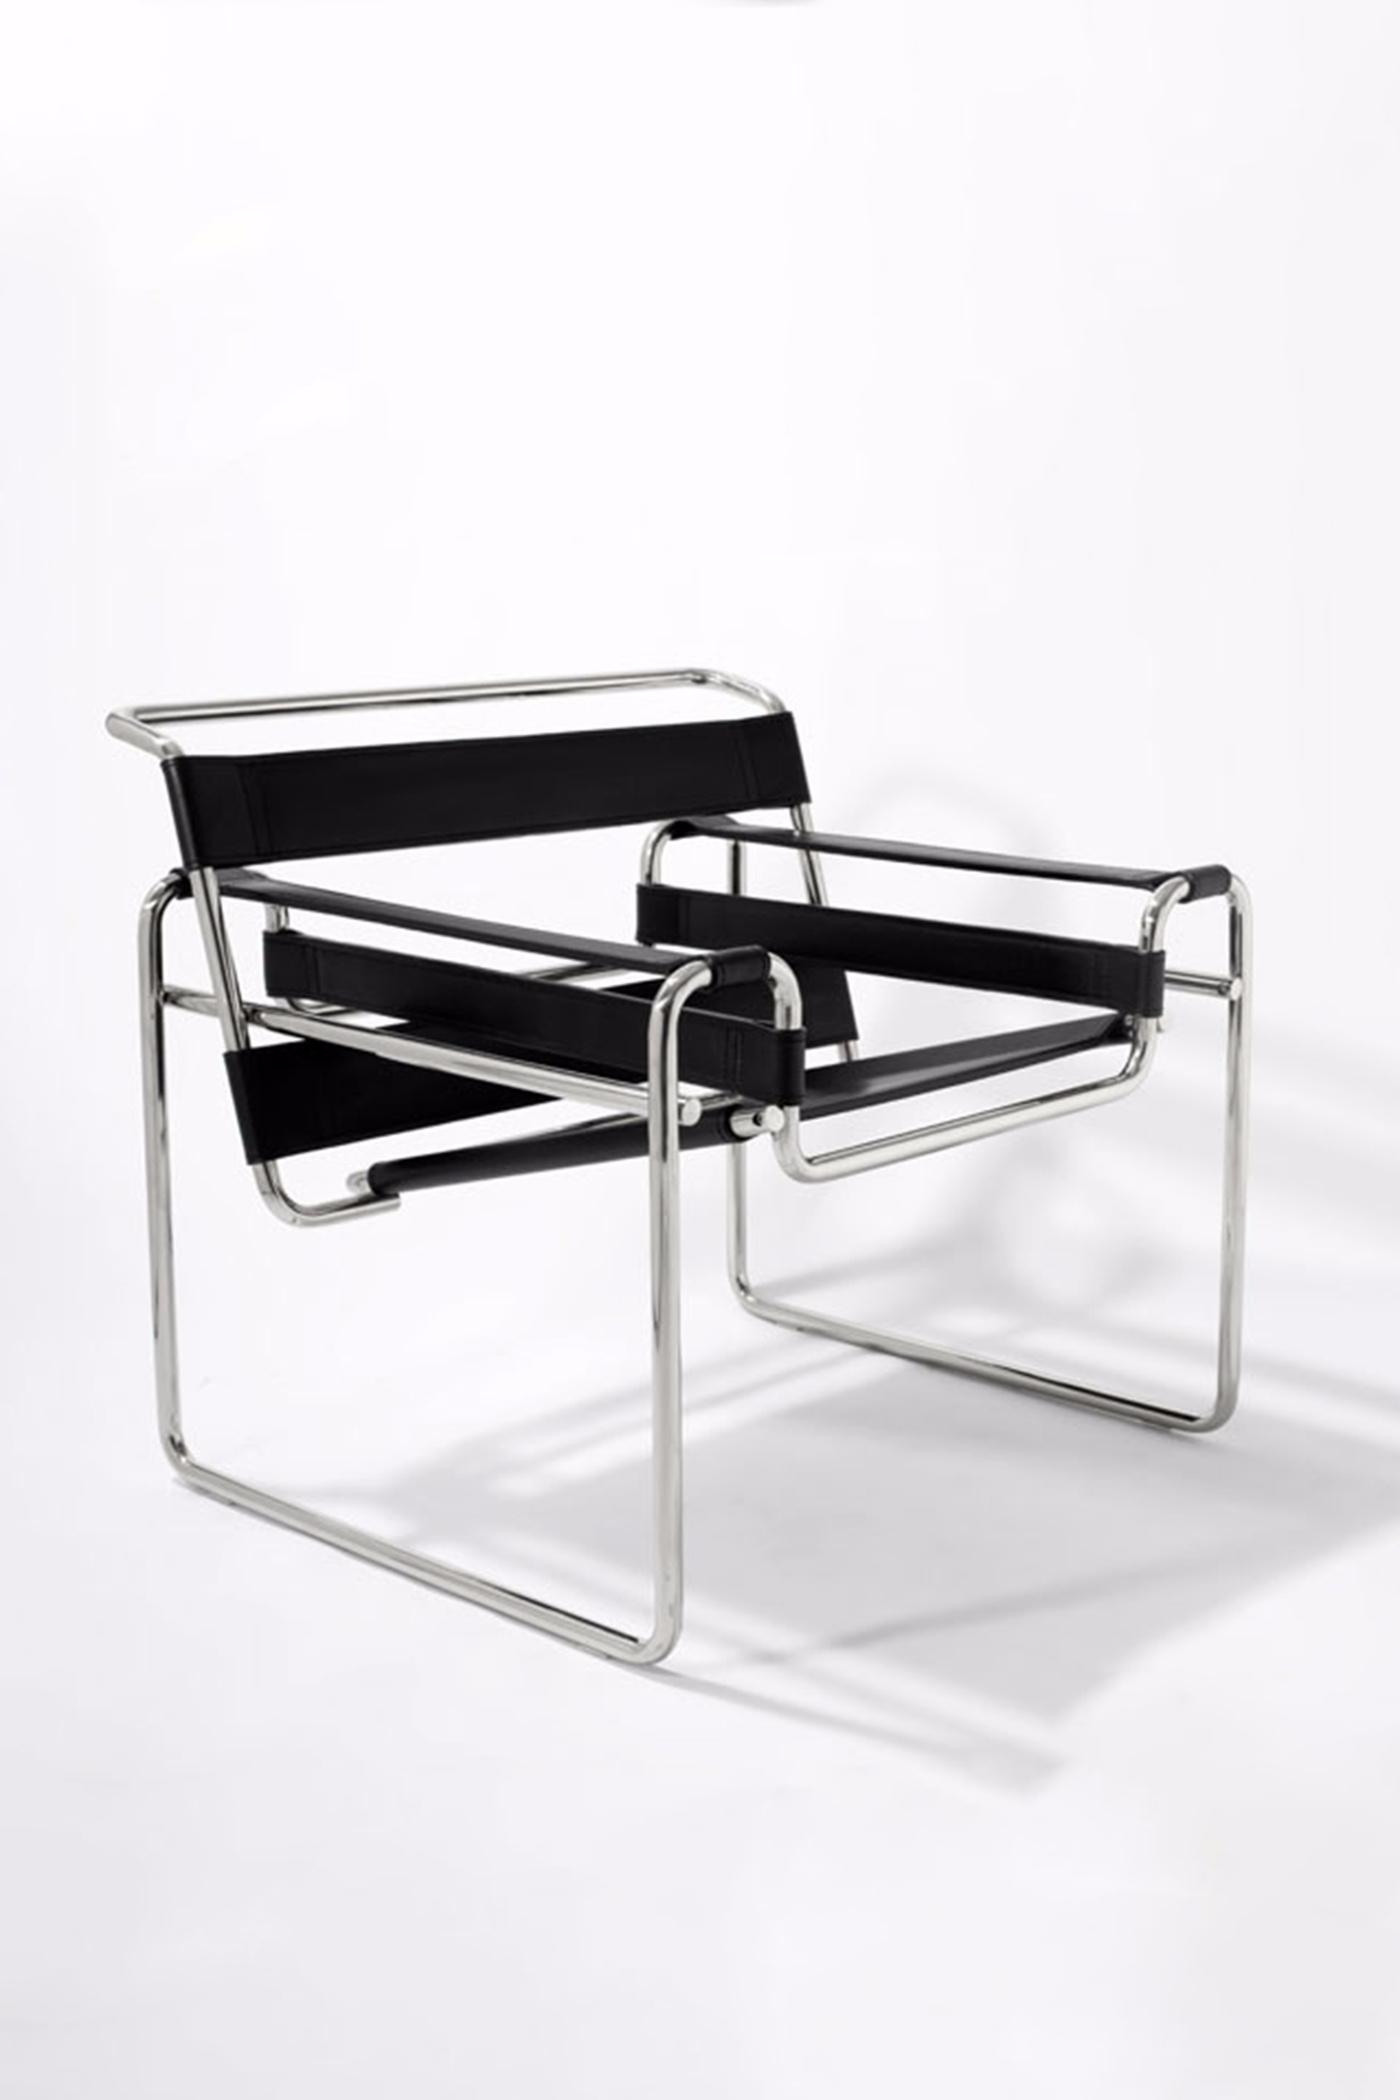 沙里宁经典设计作品——子宫椅 - 普象网